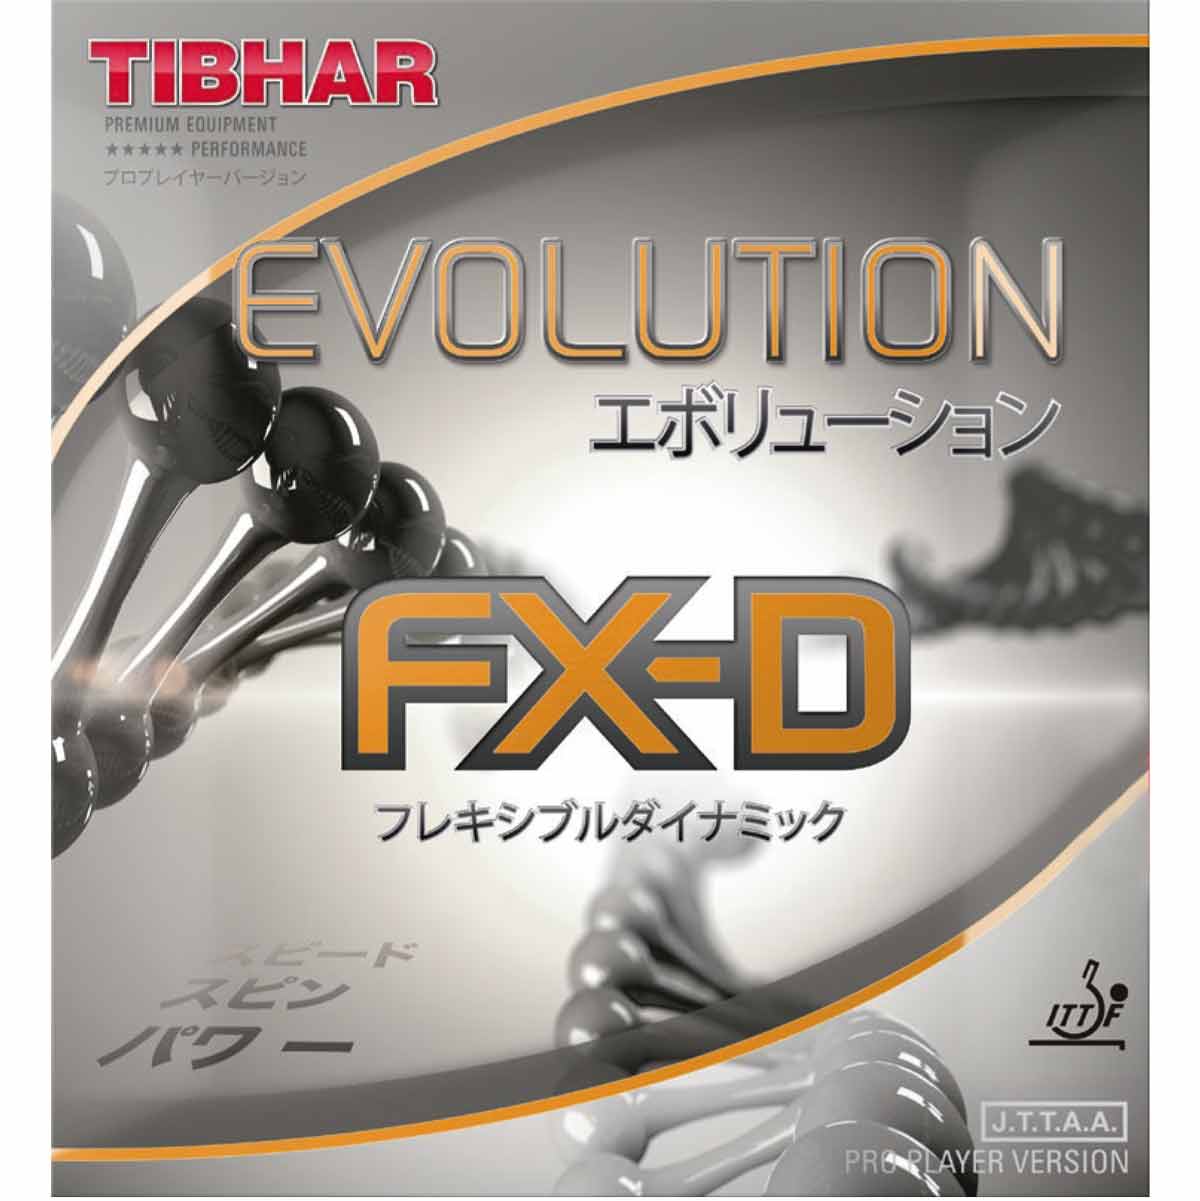 TIBHAR Evolution FX-D - Table Tennis Rubber